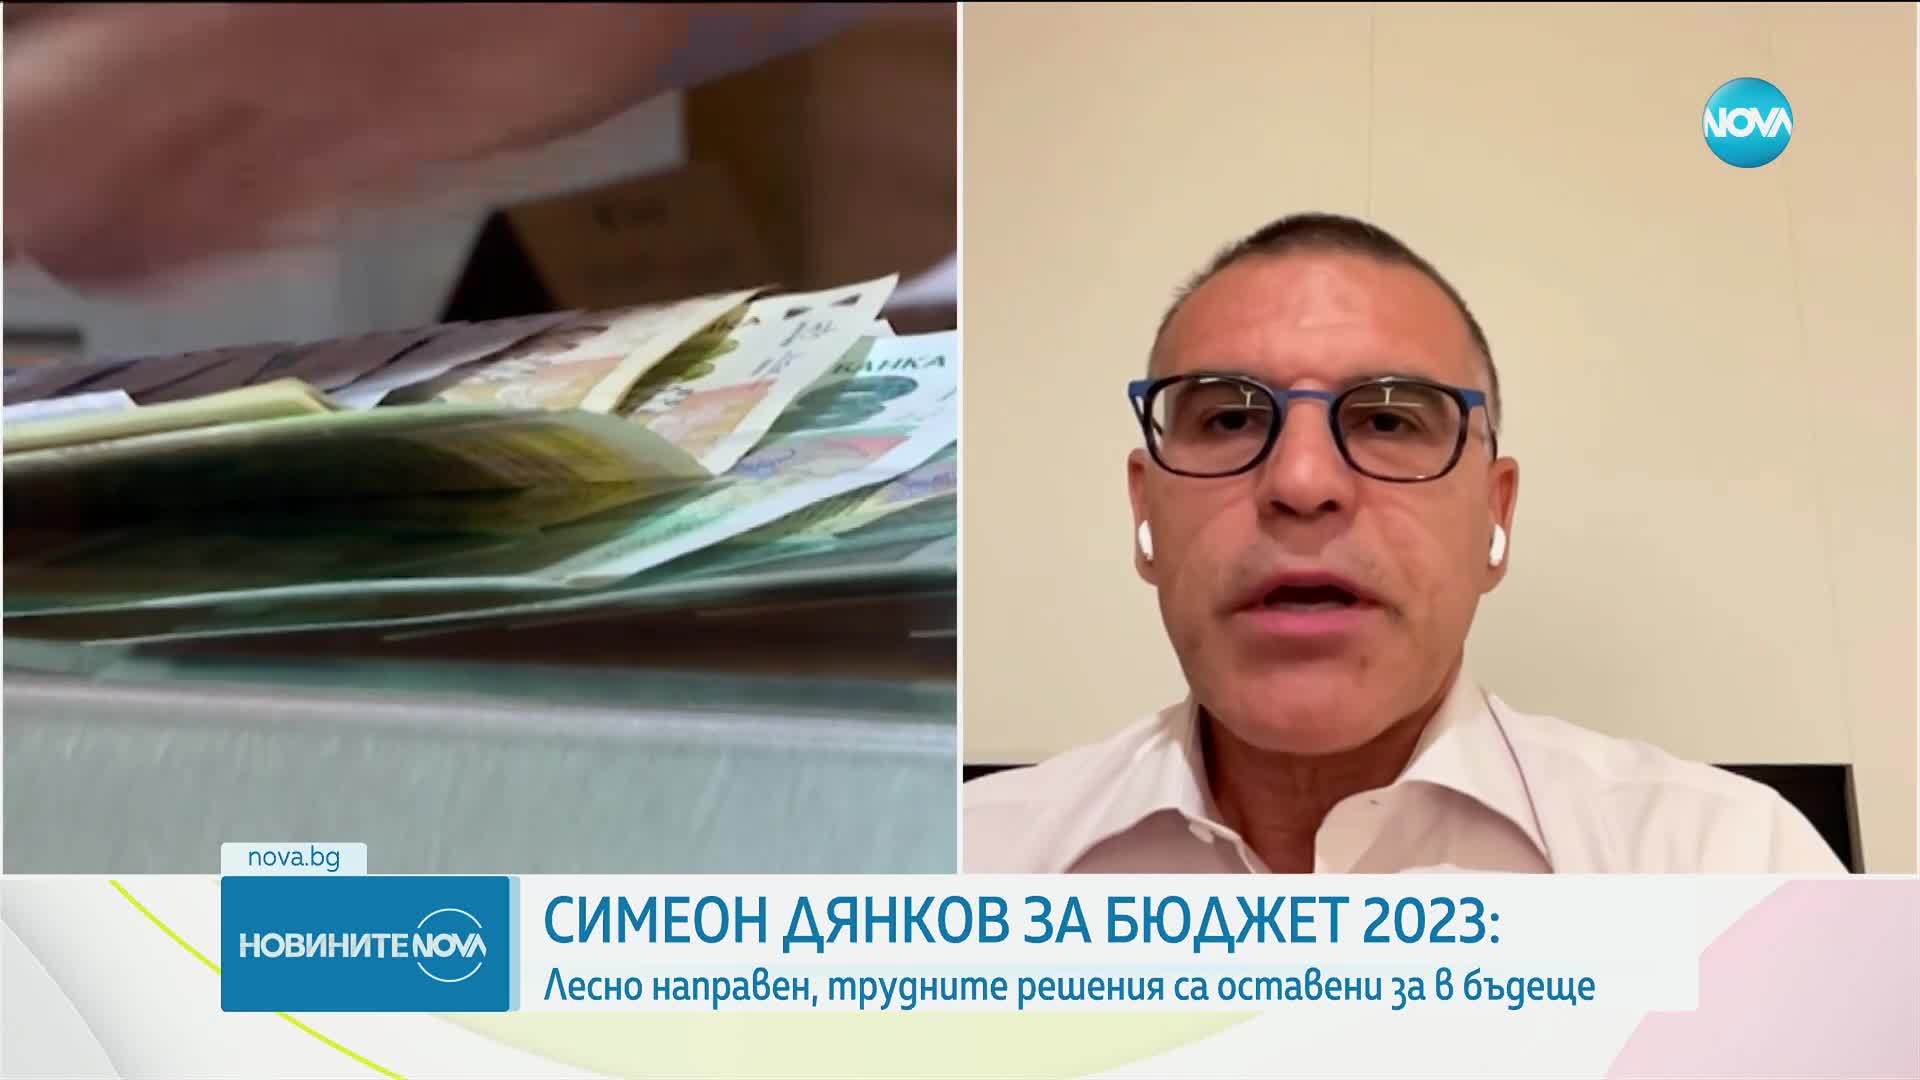 Дянков: Бюджет 2023 е лесно направен. Няма да изпълним критериите за еврозоната преди 2028 г.